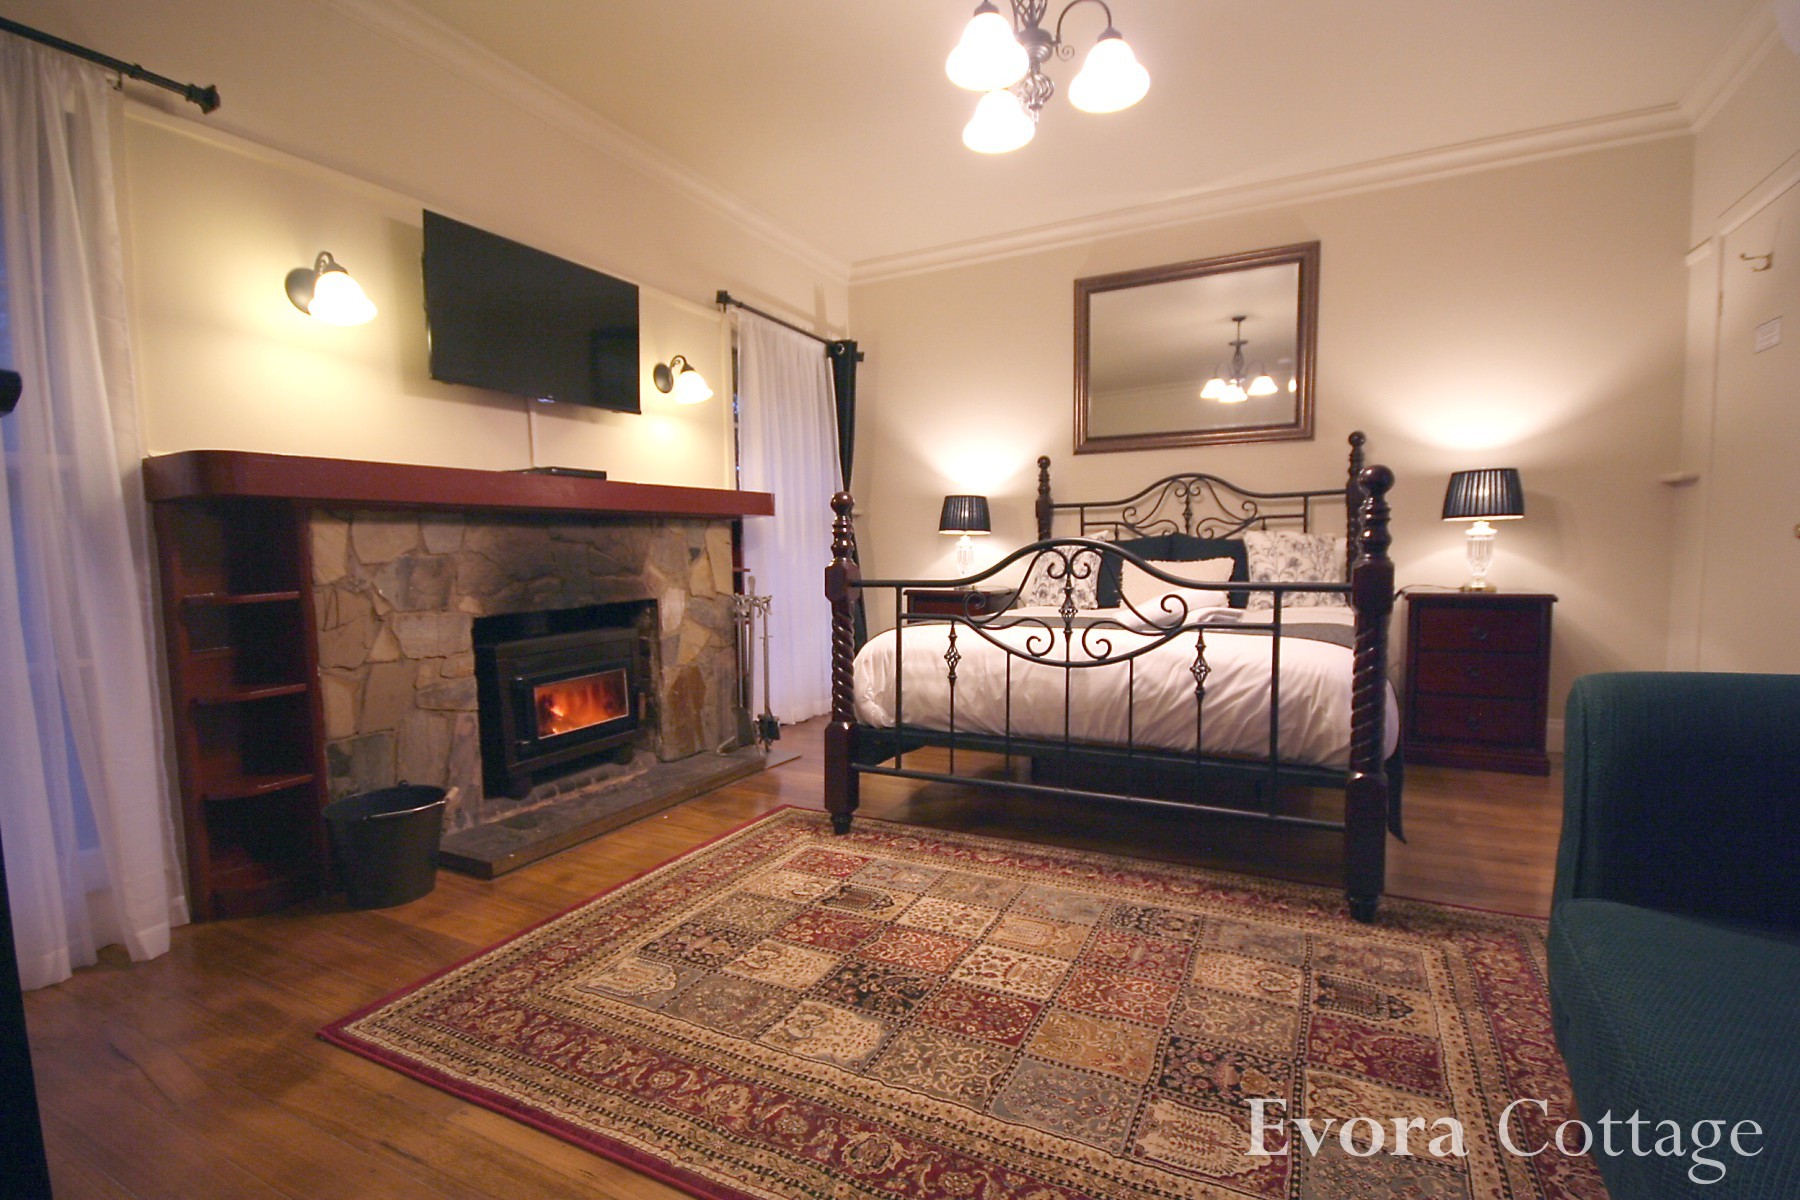 Evora Cottage Bedroom